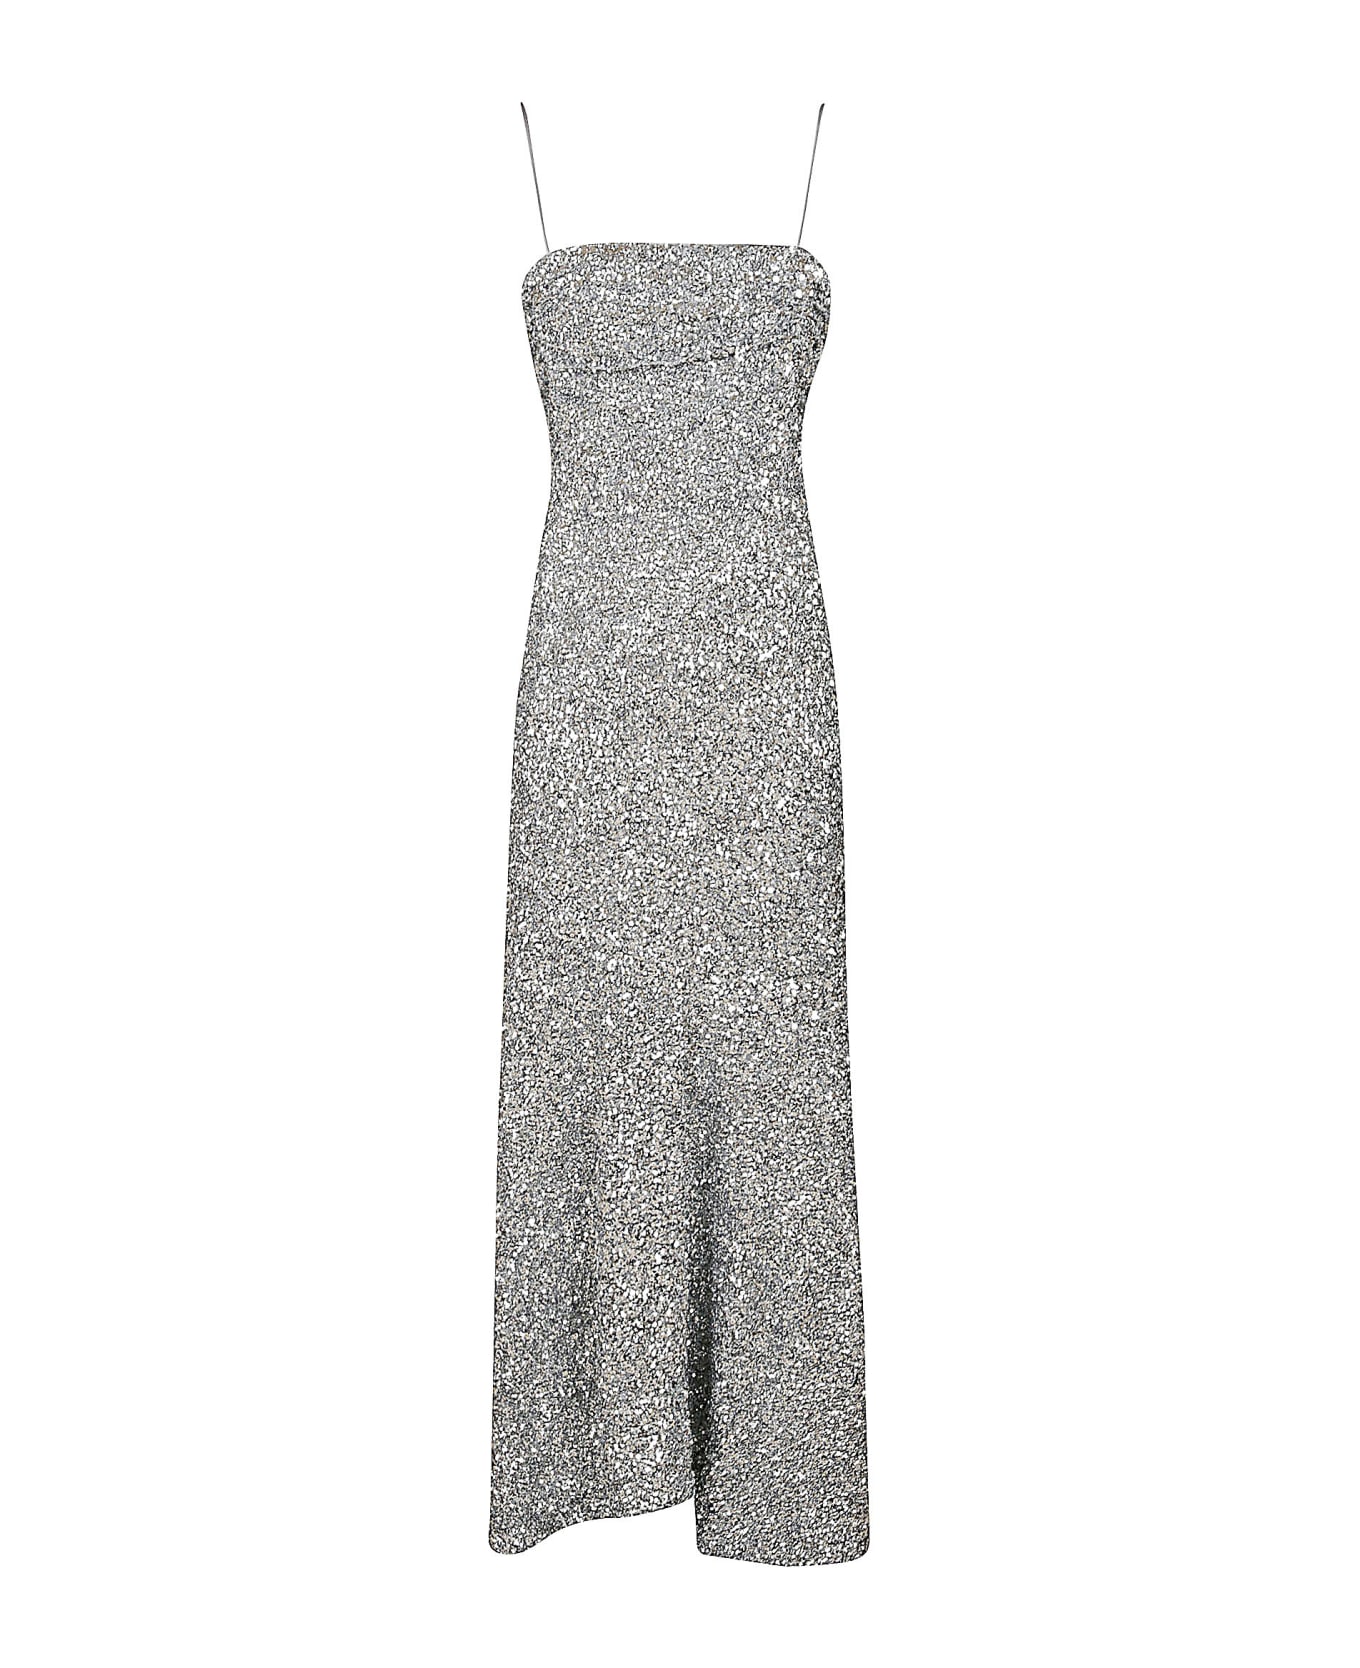 Ganni All-over Metallic Embellished Dress - Silver